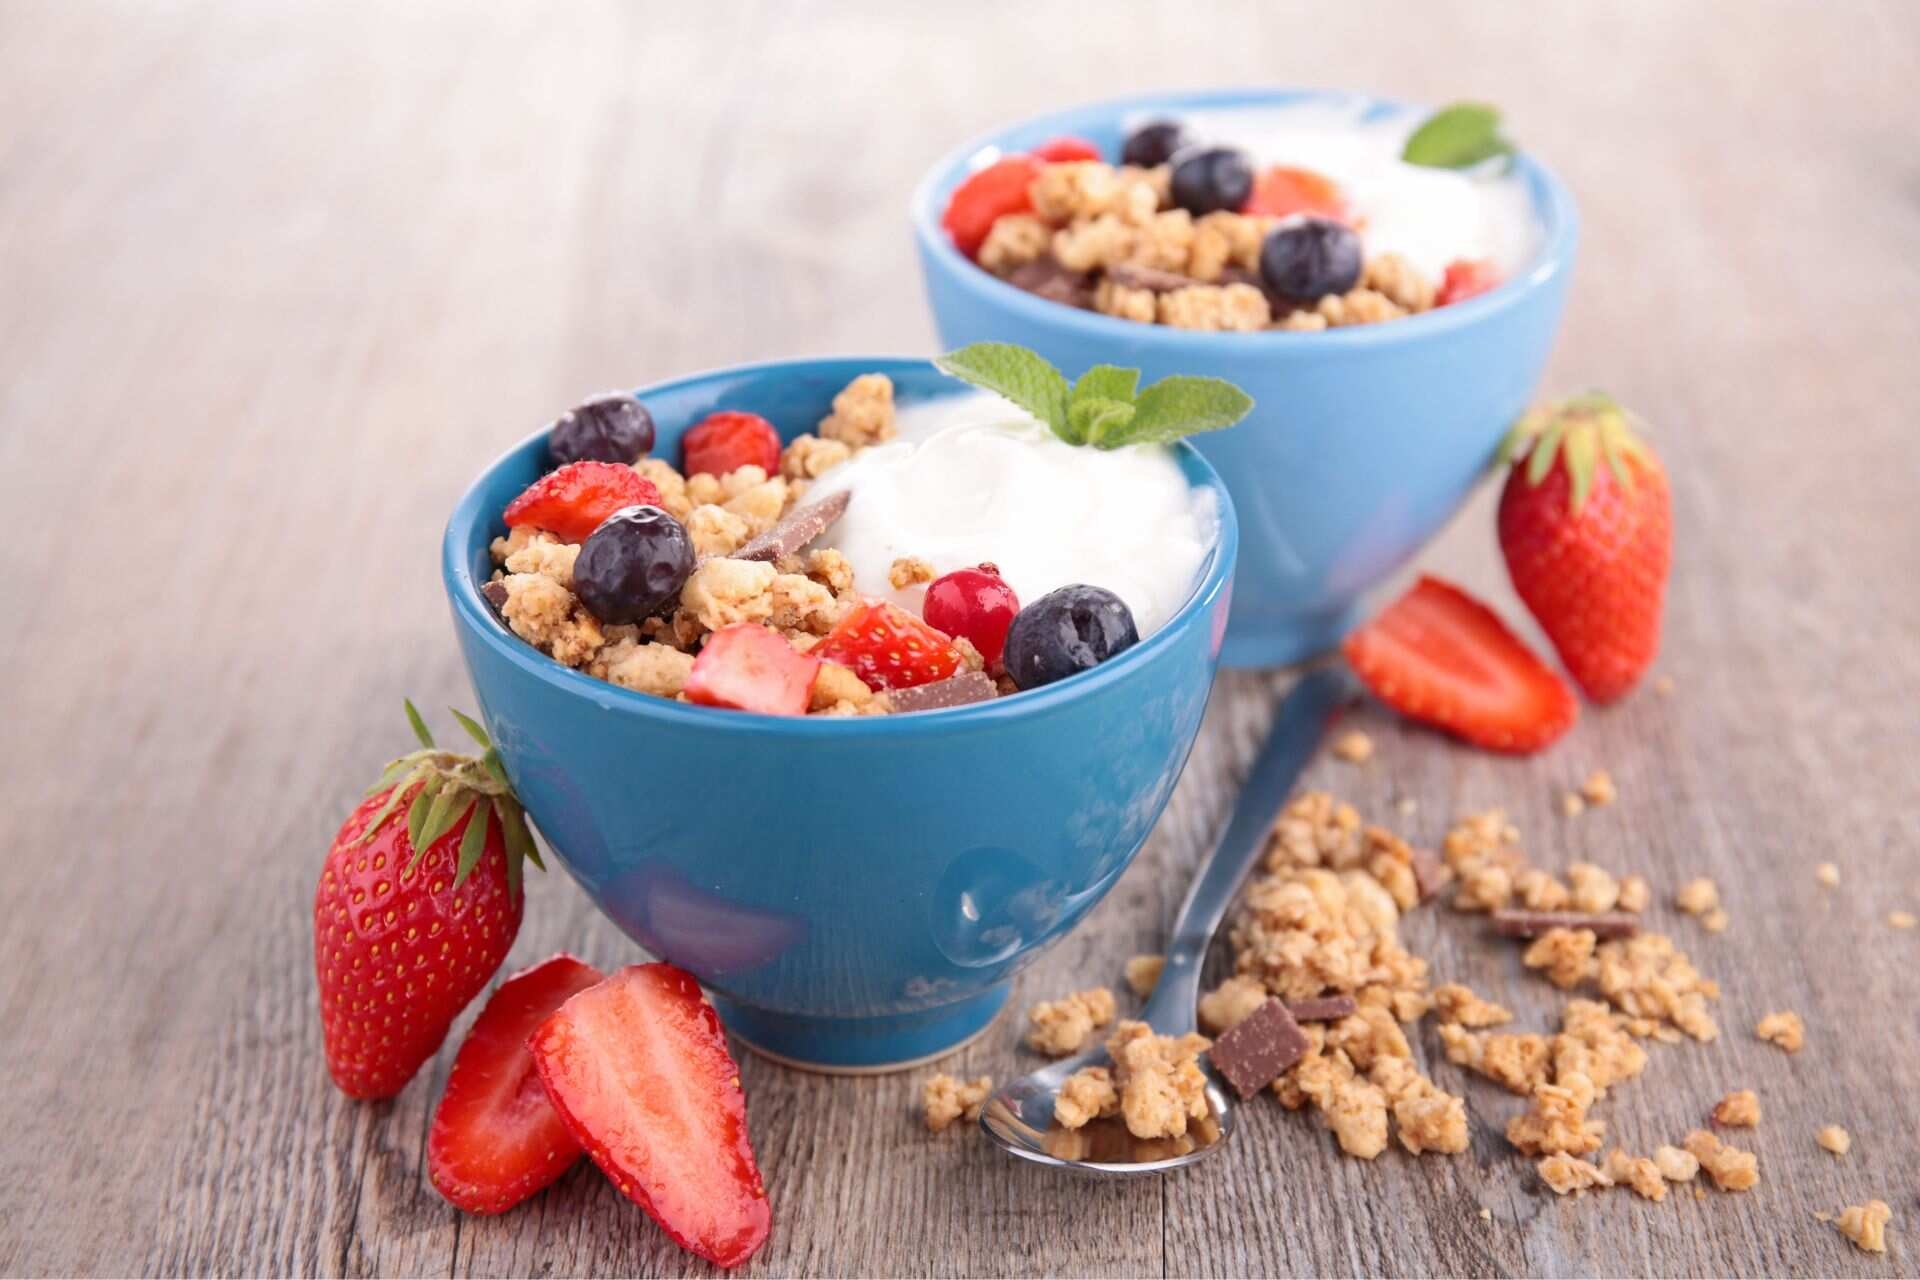 Bolla gastrica: si consiglia di evitare la somma di frutta e cereali durante un pasto